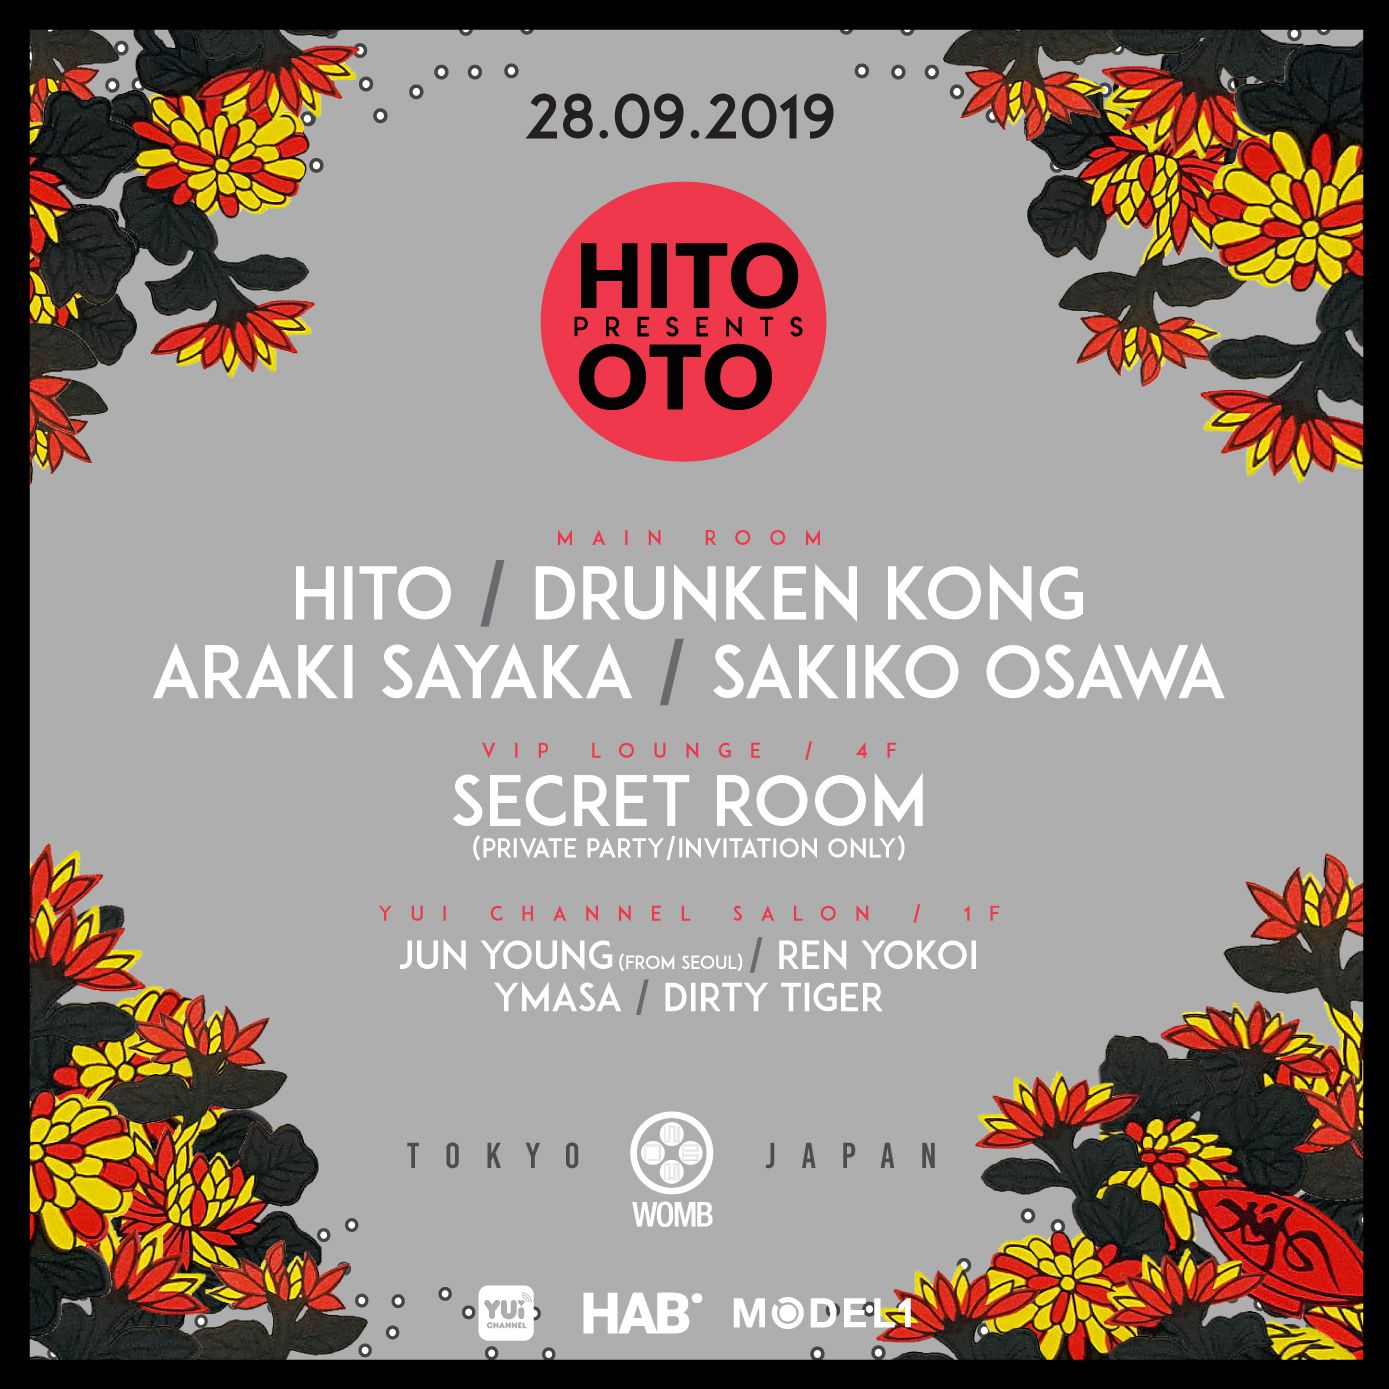 HITO presents OTO